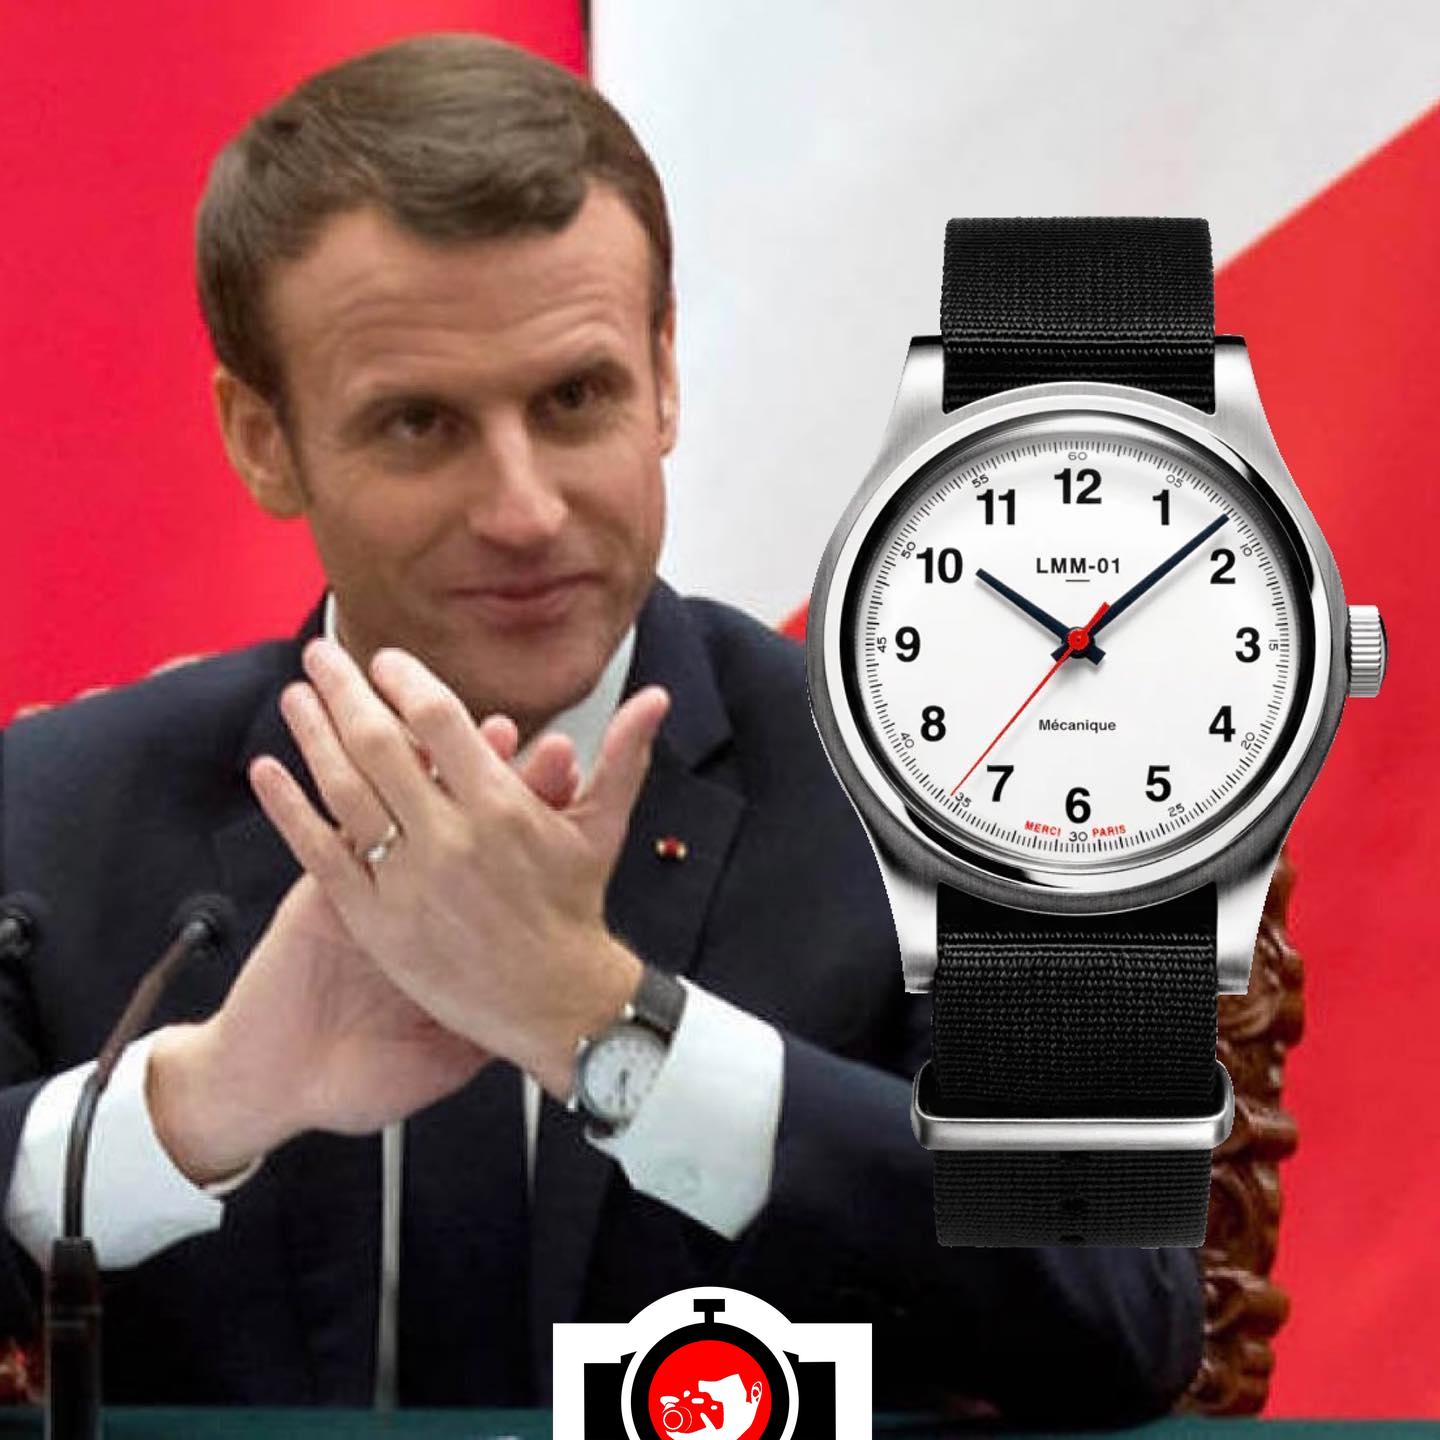 politician Emmanuel Macron spotted wearing a Merci LMM-01